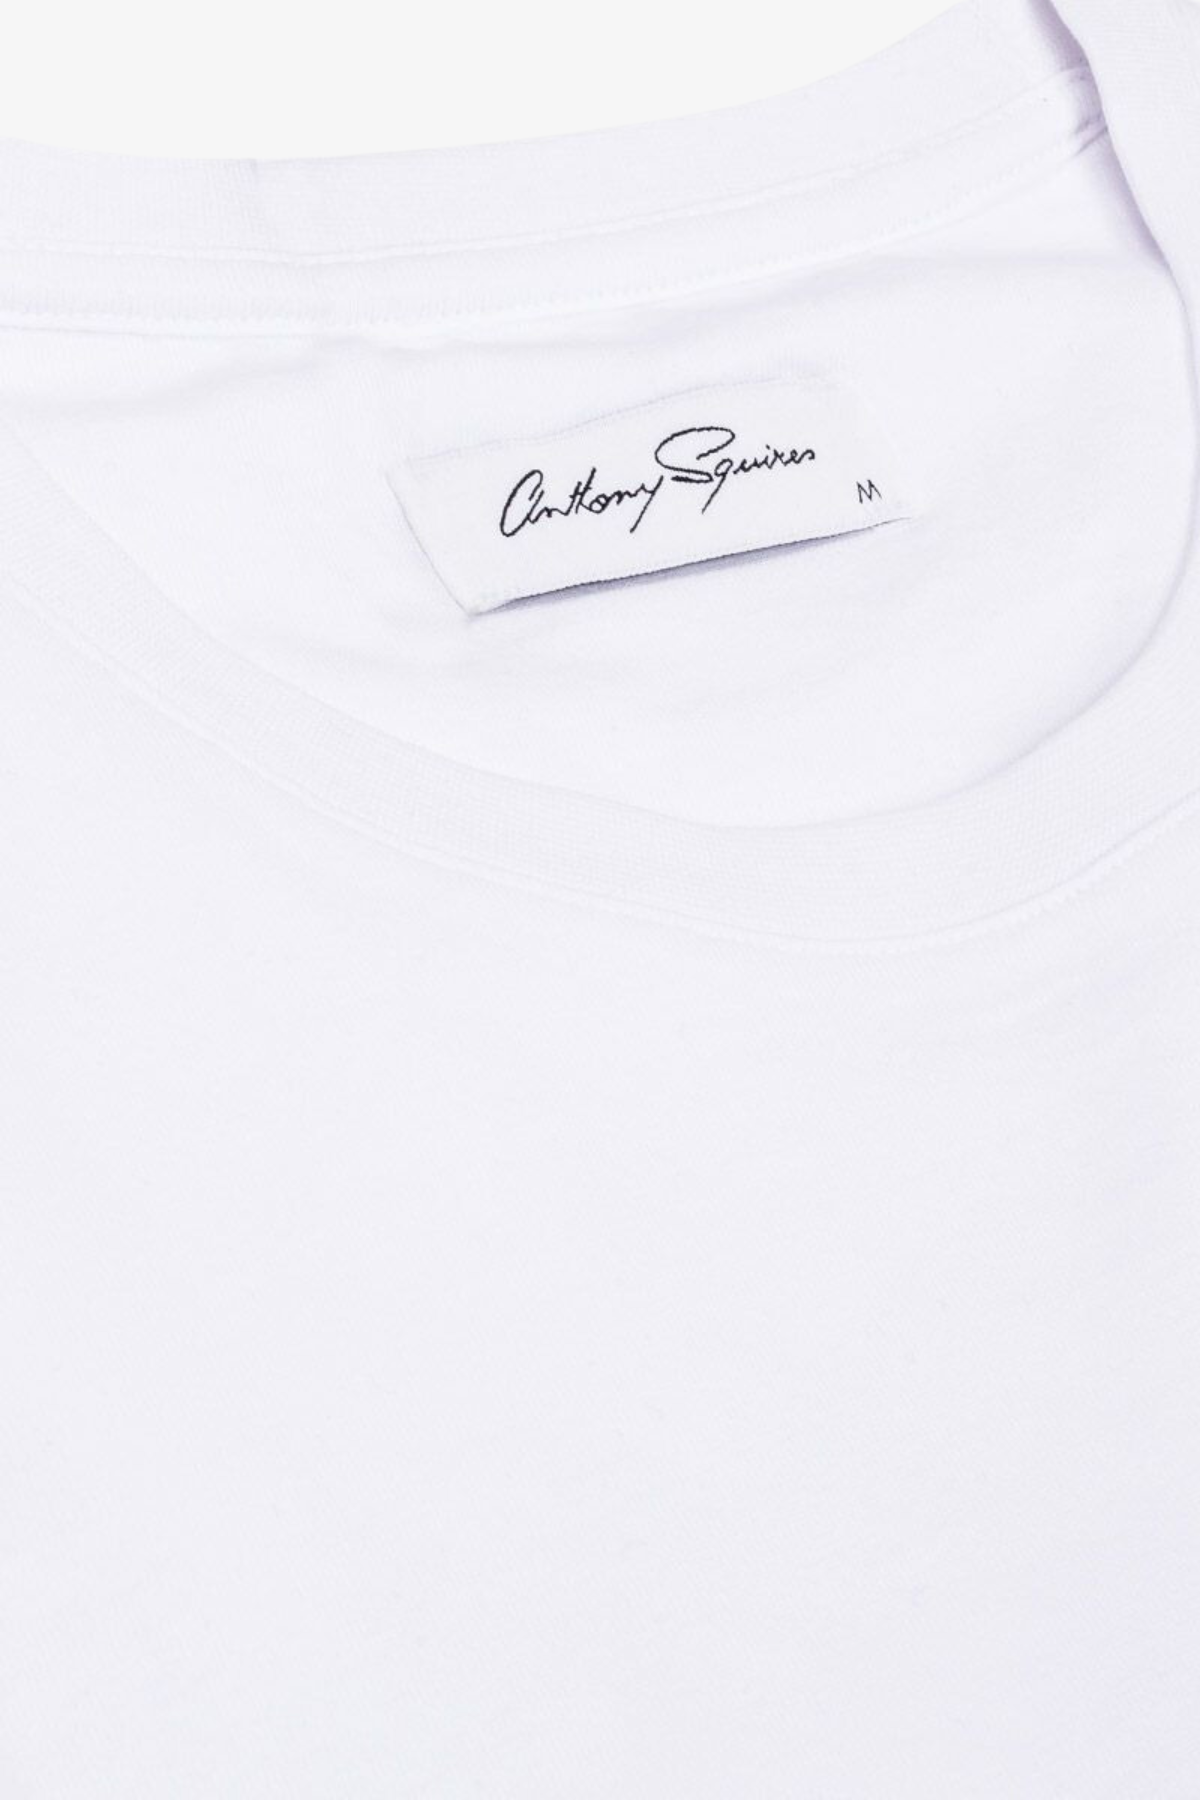 Edan - White T-shirt